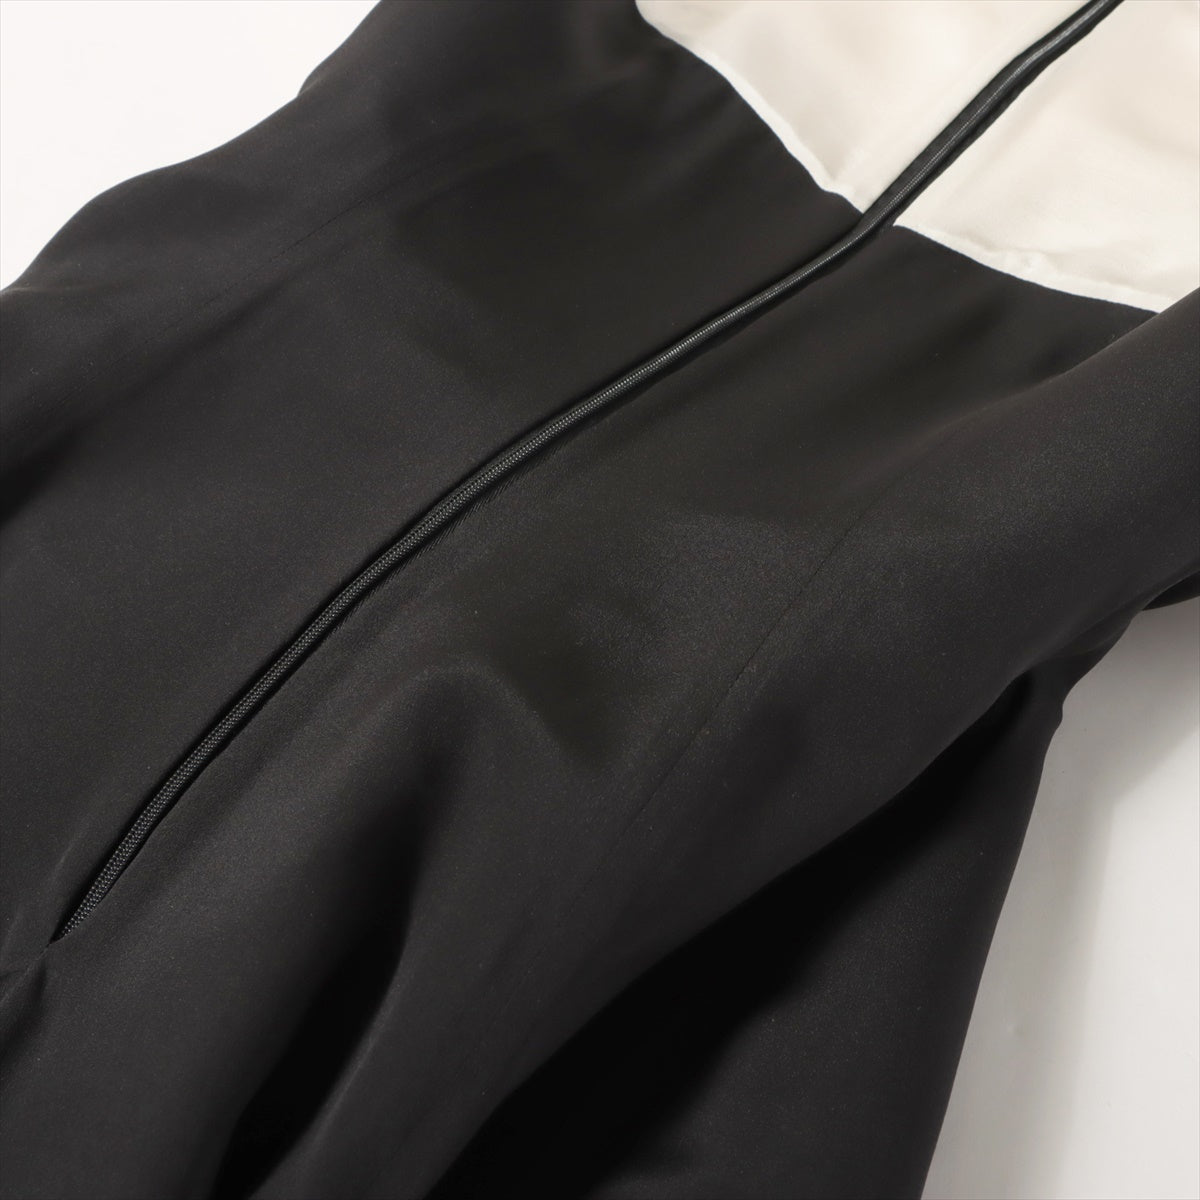 Christian Dior Silk Dress I40 Ladies' Black × White  6E21676D1612